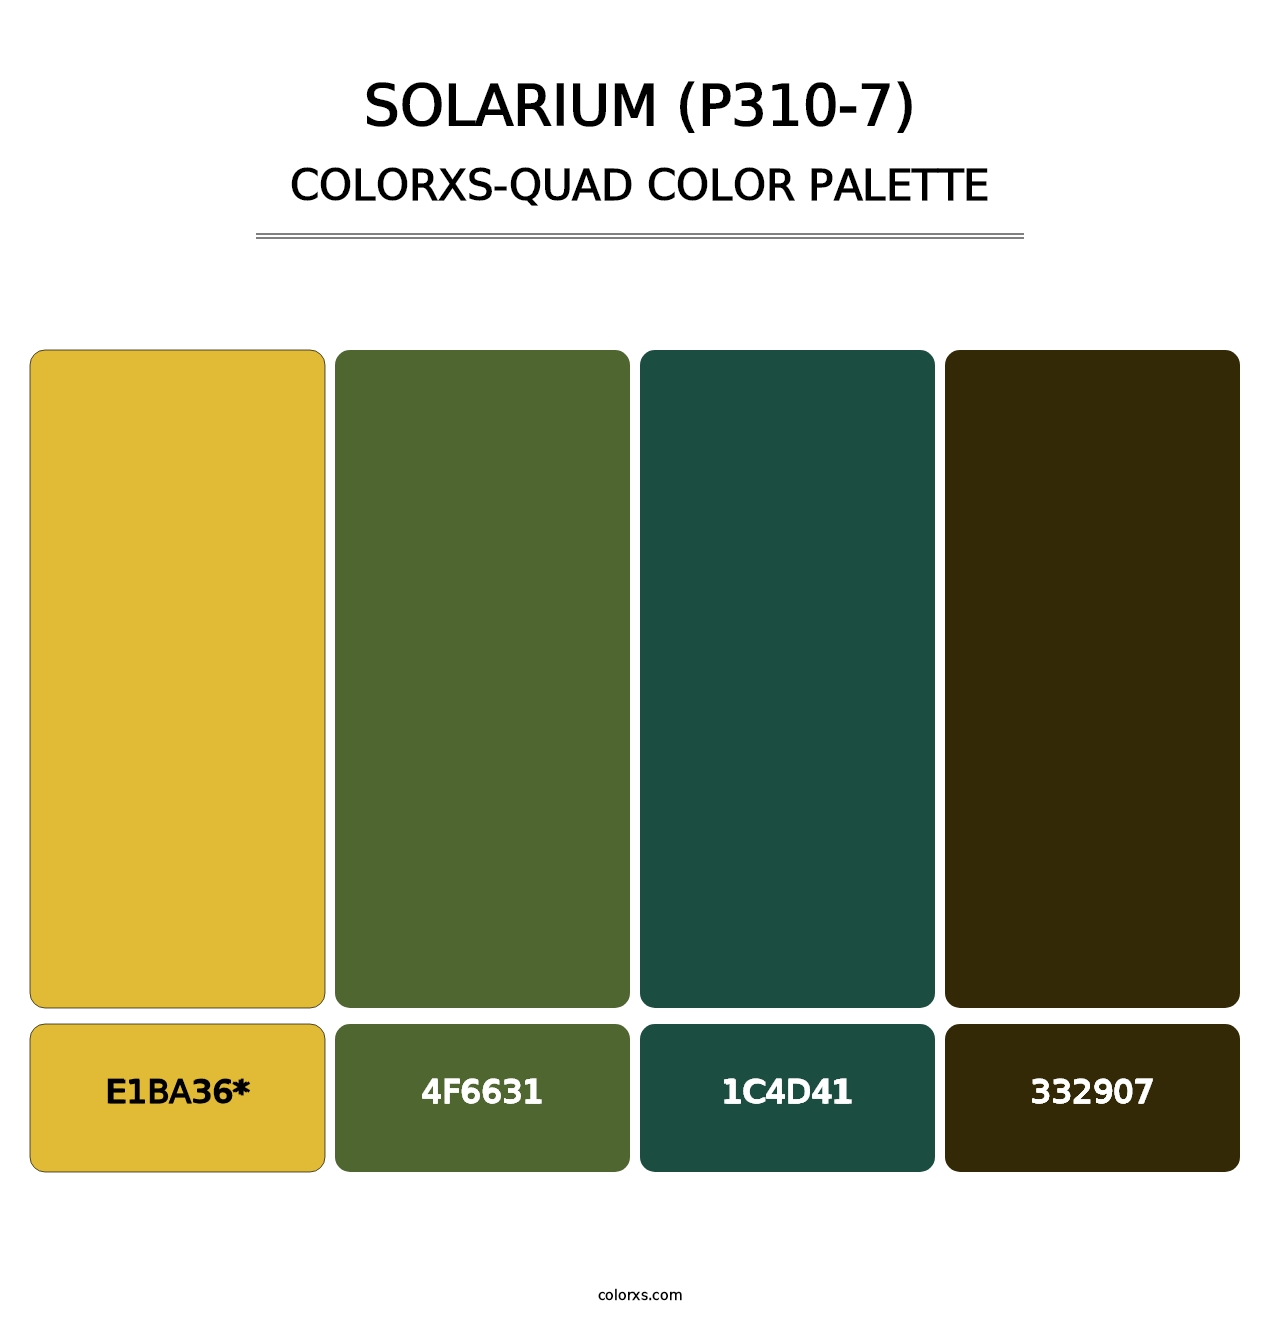 Solarium (P310-7) - Colorxs Quad Palette